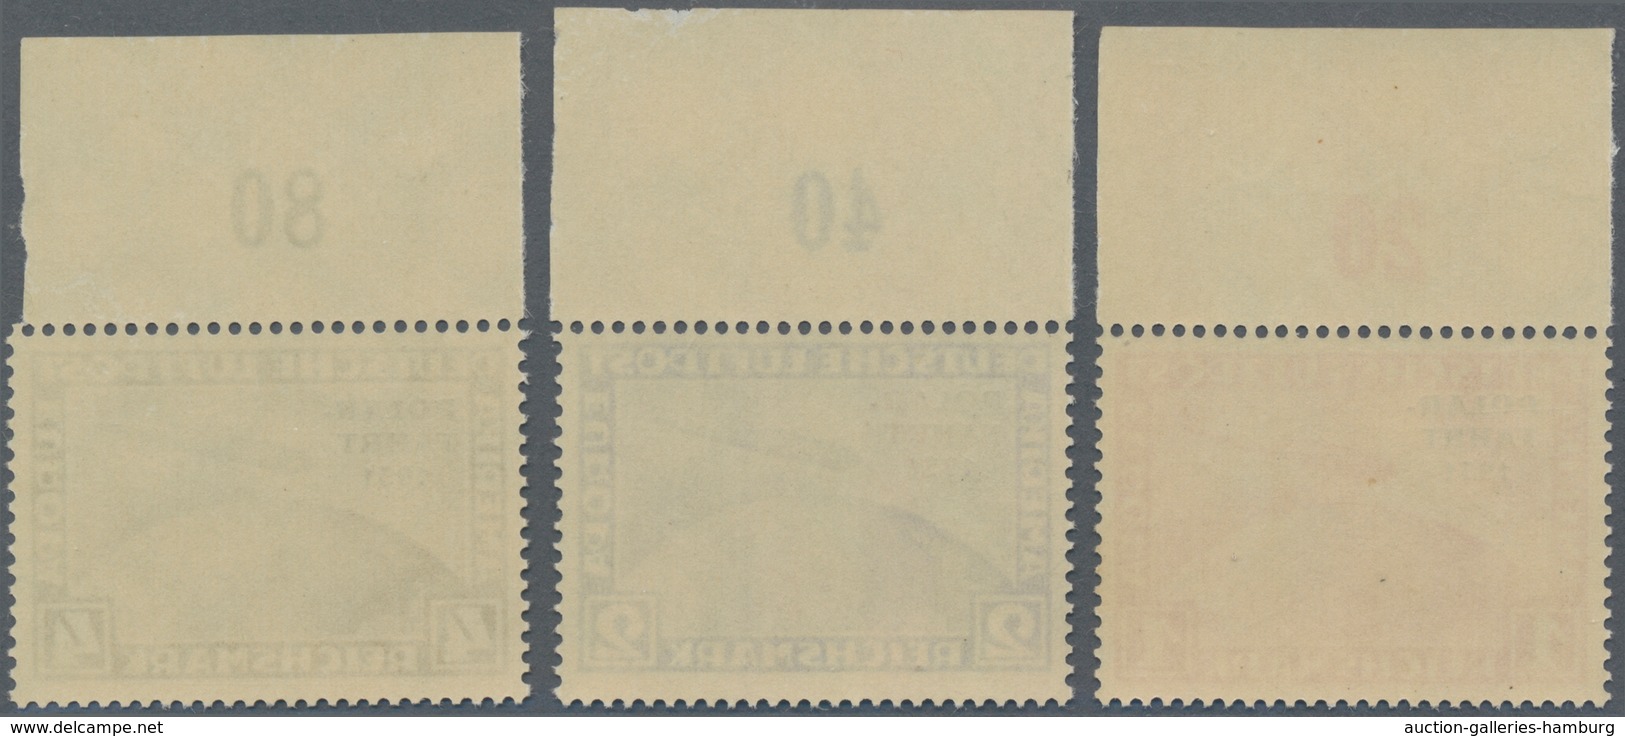 Deutsches Reich - Weimar: 1931, Polarfahrt, Postfrischer, Ungefalteter Luxus-OR-Satz, Auch Ränder Ma - Unused Stamps